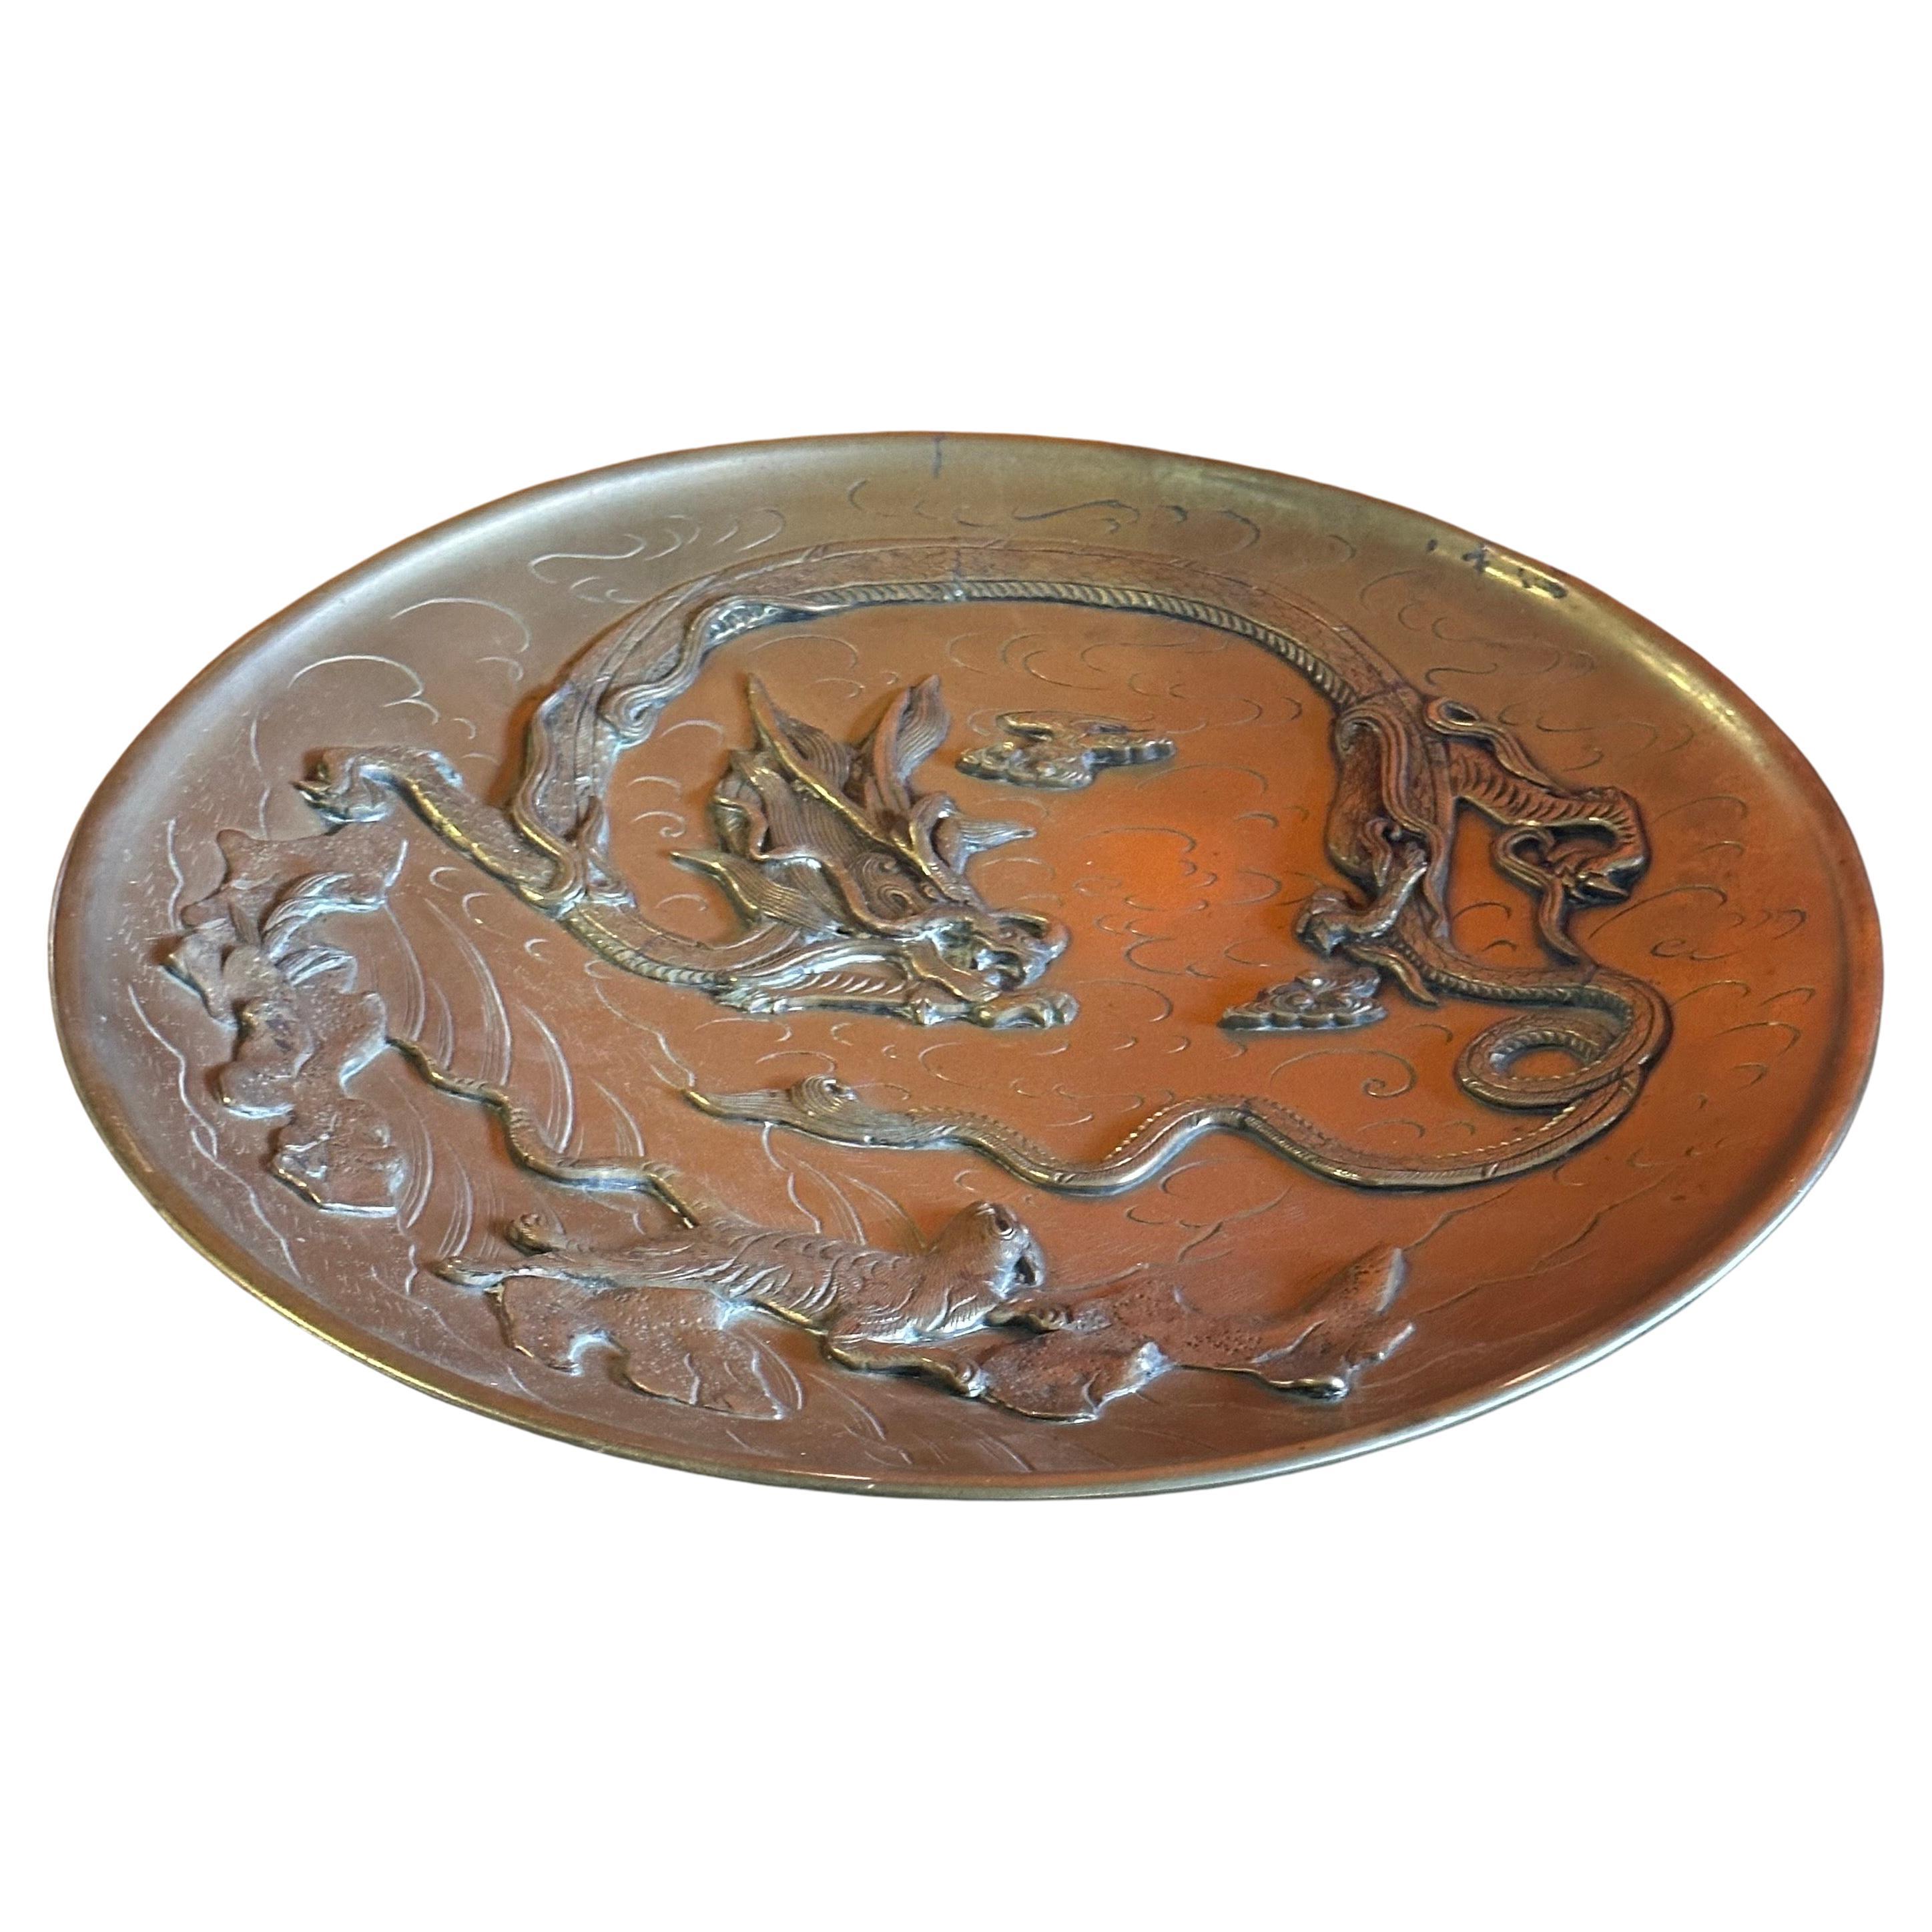 Superbe chargeur chinois vintage en laiton avec dragon en bas-relief, vers les années 1940.  La pièce est en très bon état et mesure 14 pouces de profondeur sur 2 pouces de hauteur.  Le chargeur présente de beaux détails en bas-relief et est signé